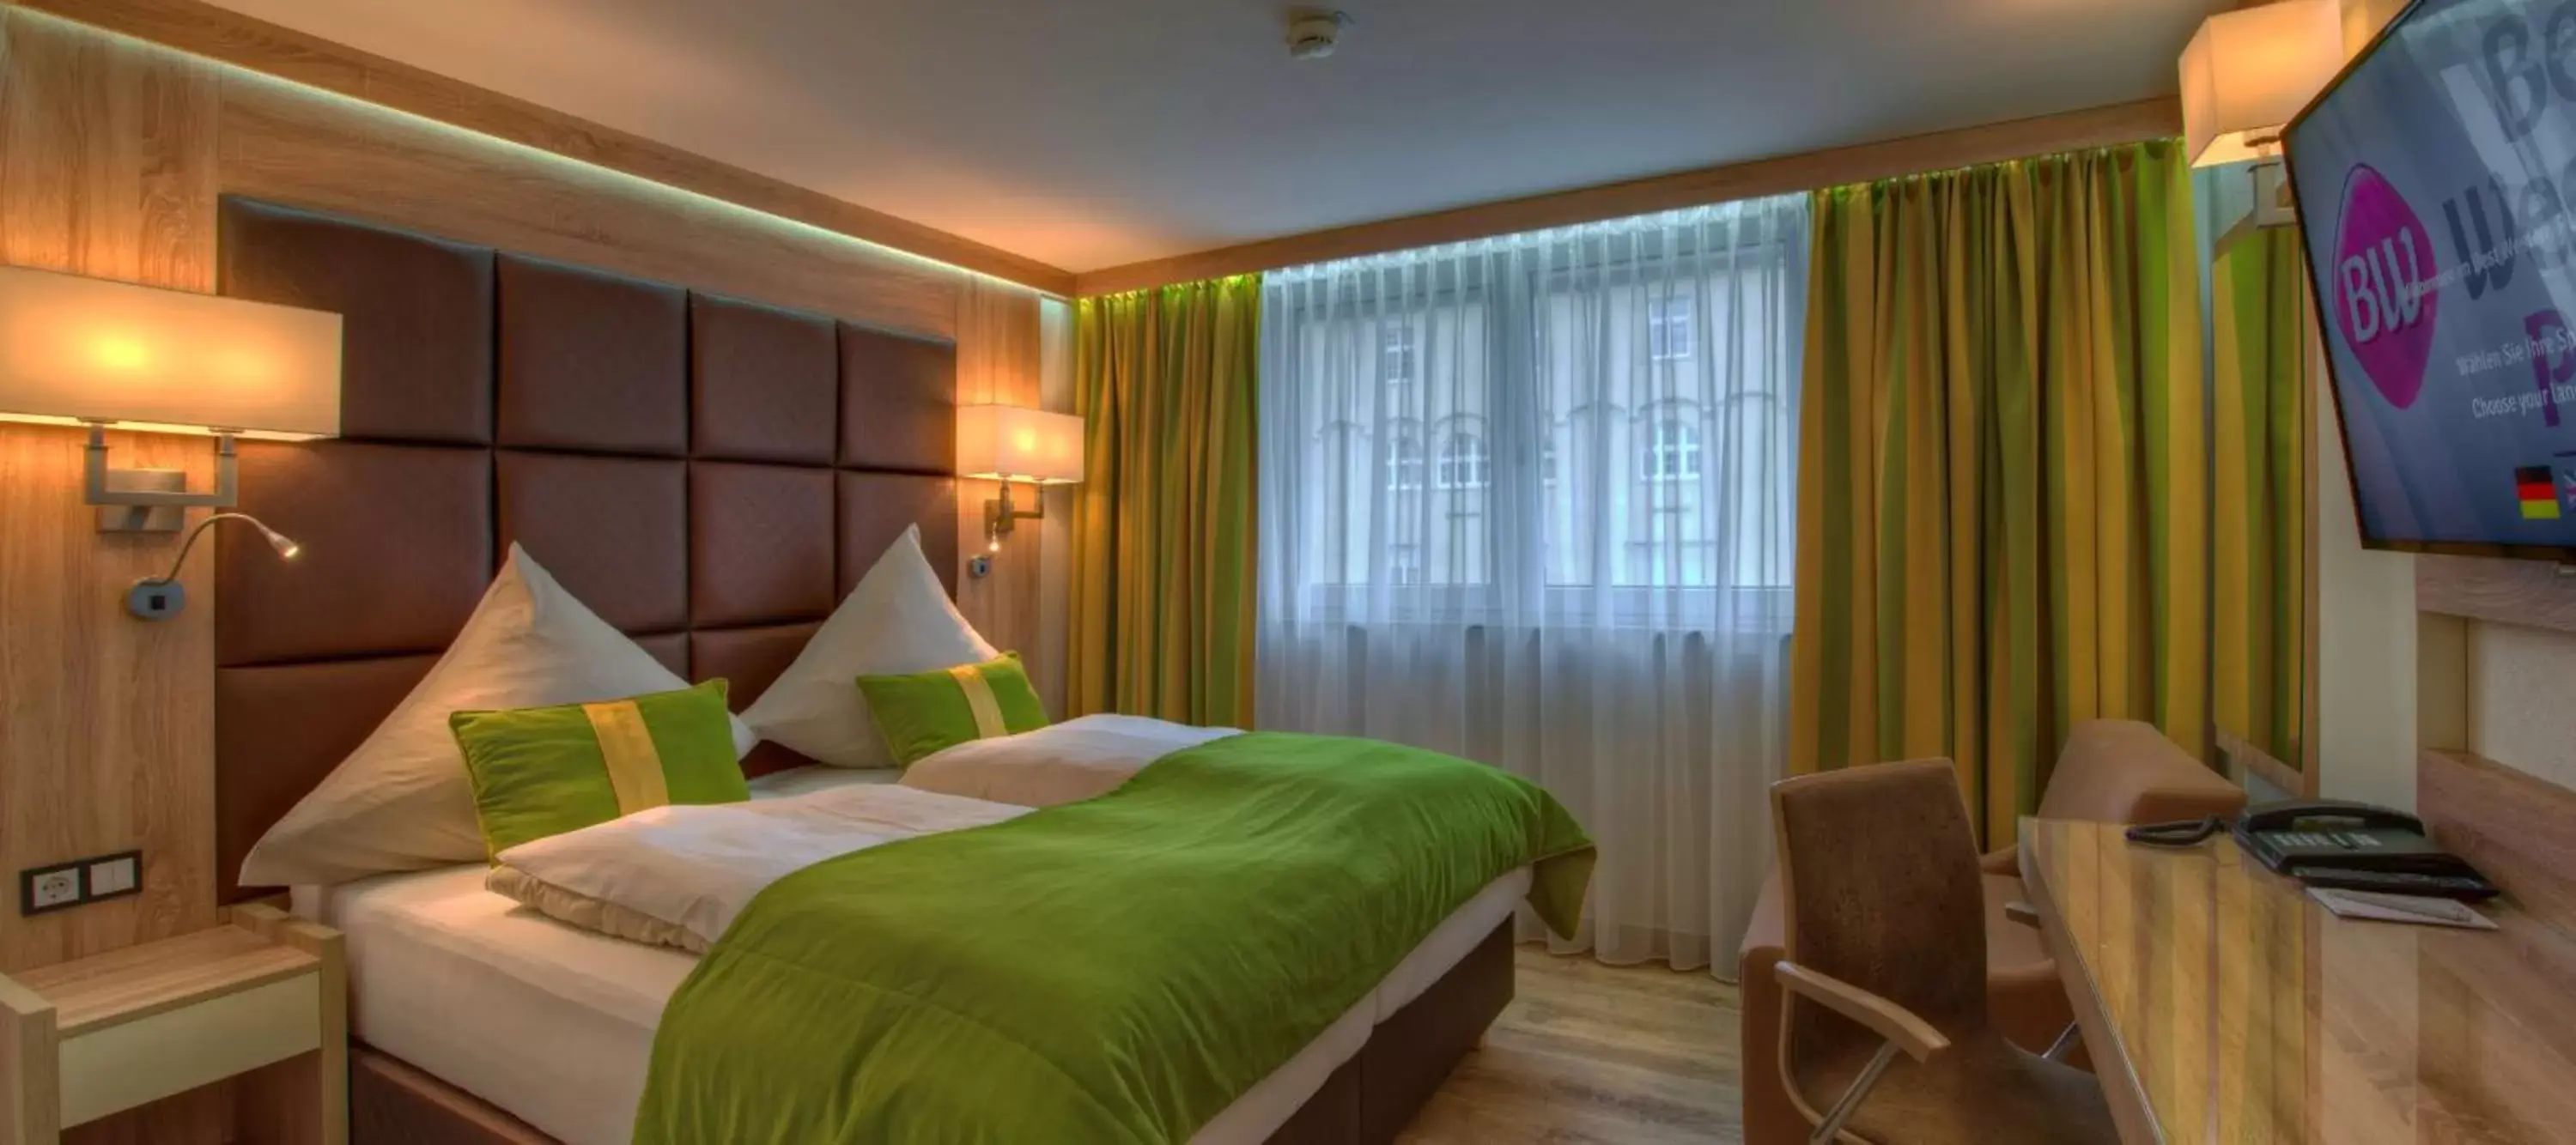 Bedroom, Bed in Best Western Plus Hotel Füssen